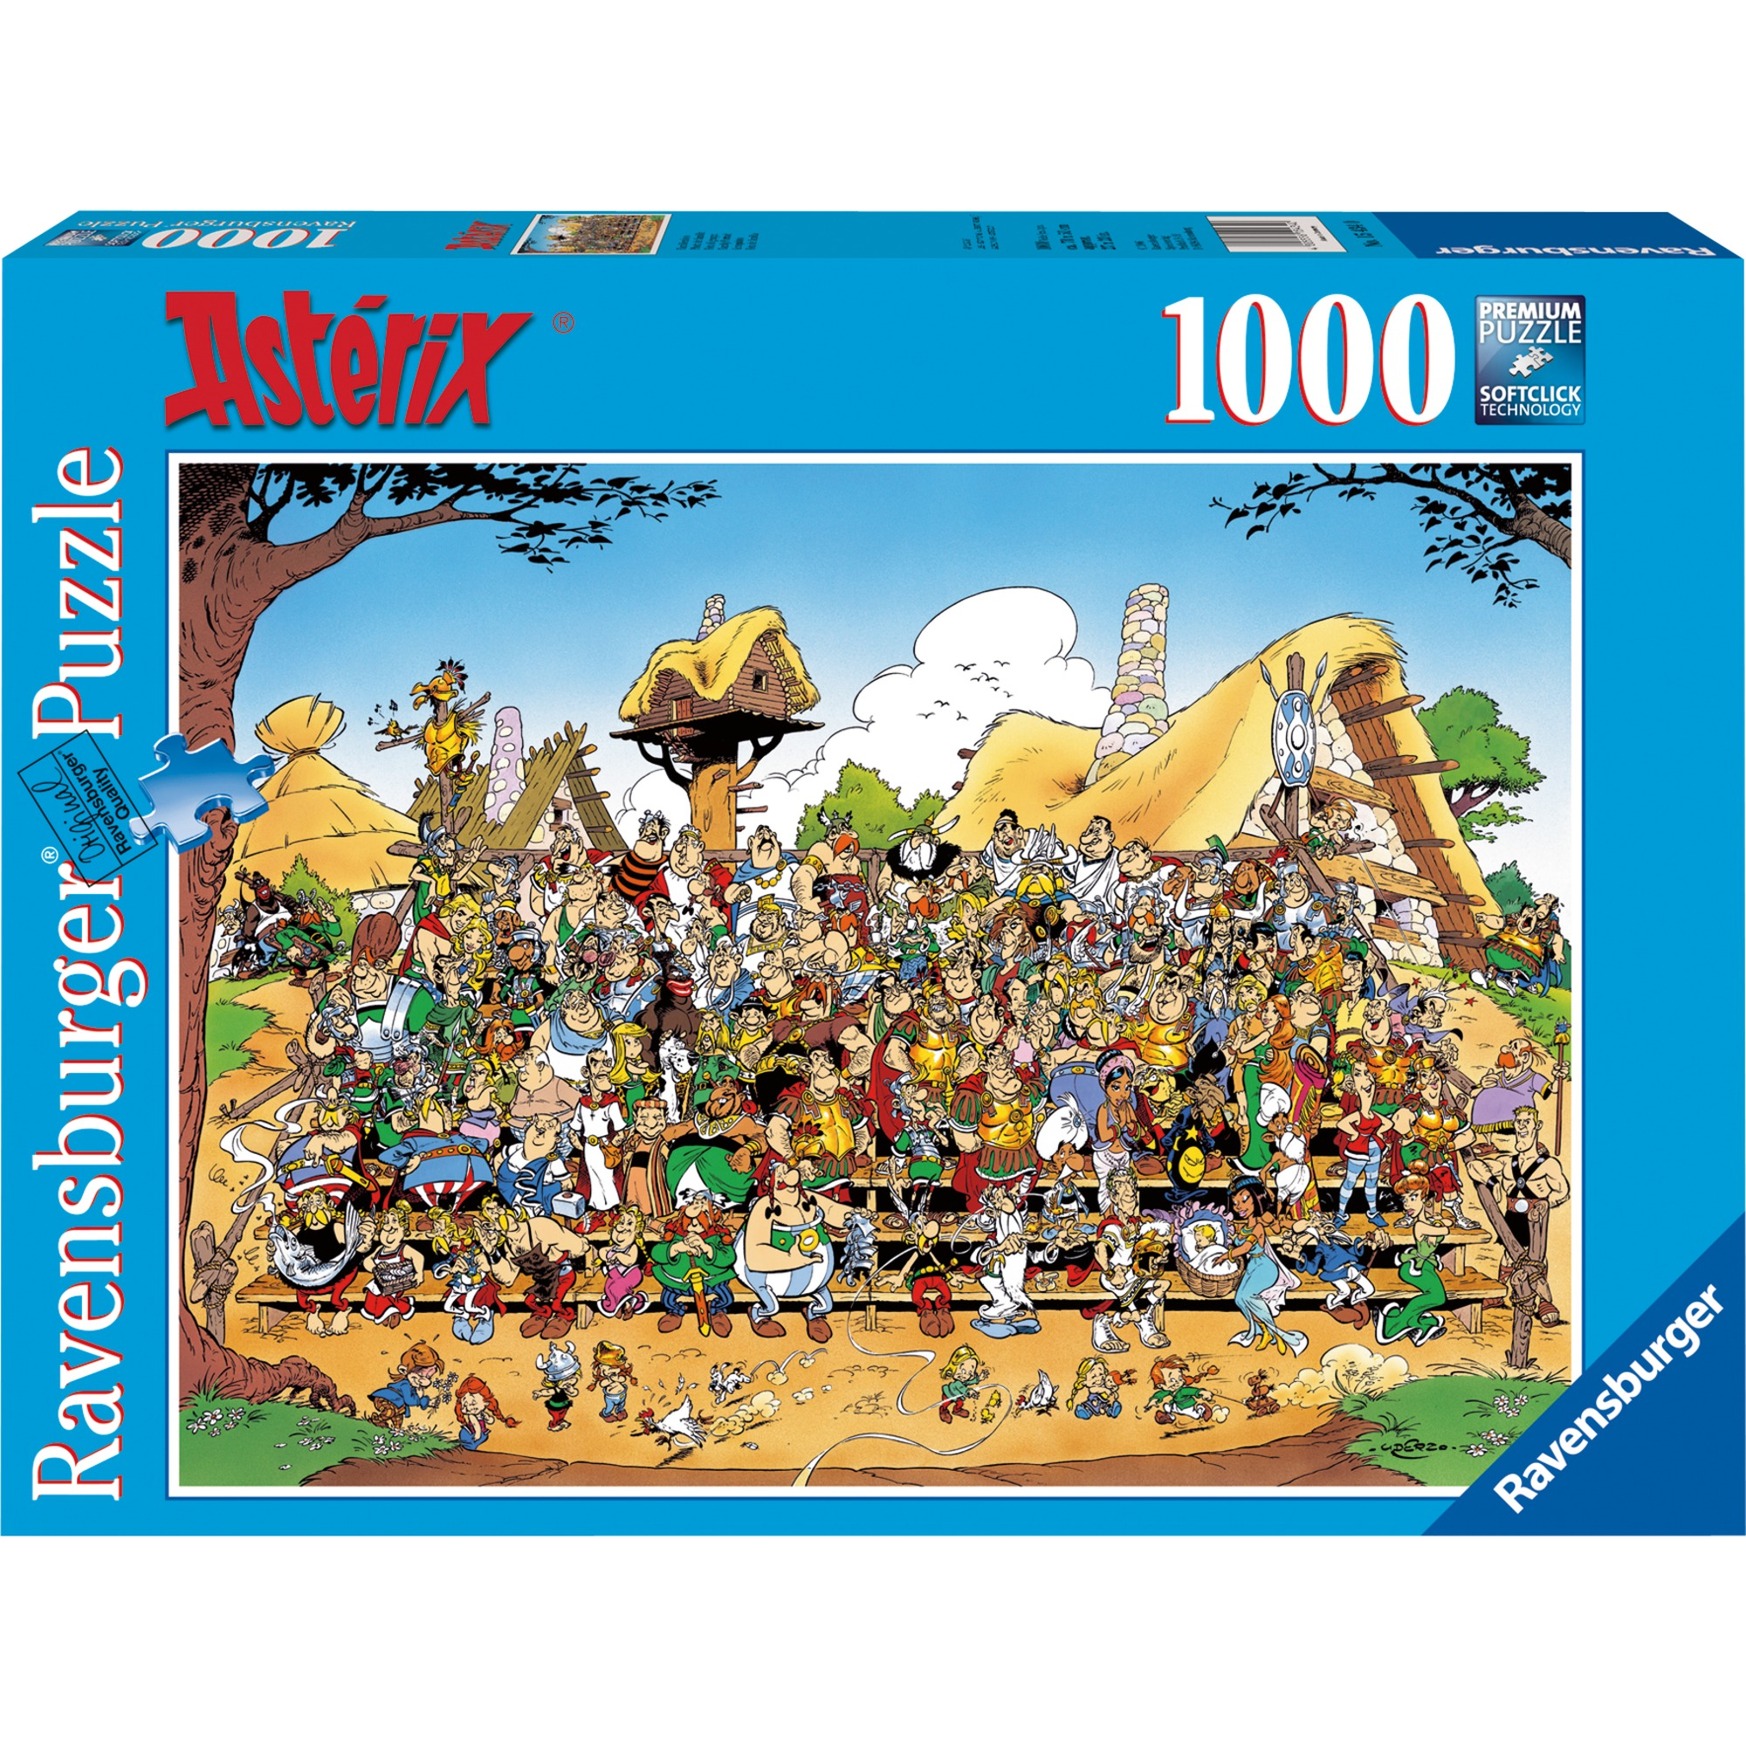 Image of Alternate - Puzzle Asterix Familienfoto online einkaufen bei Alternate